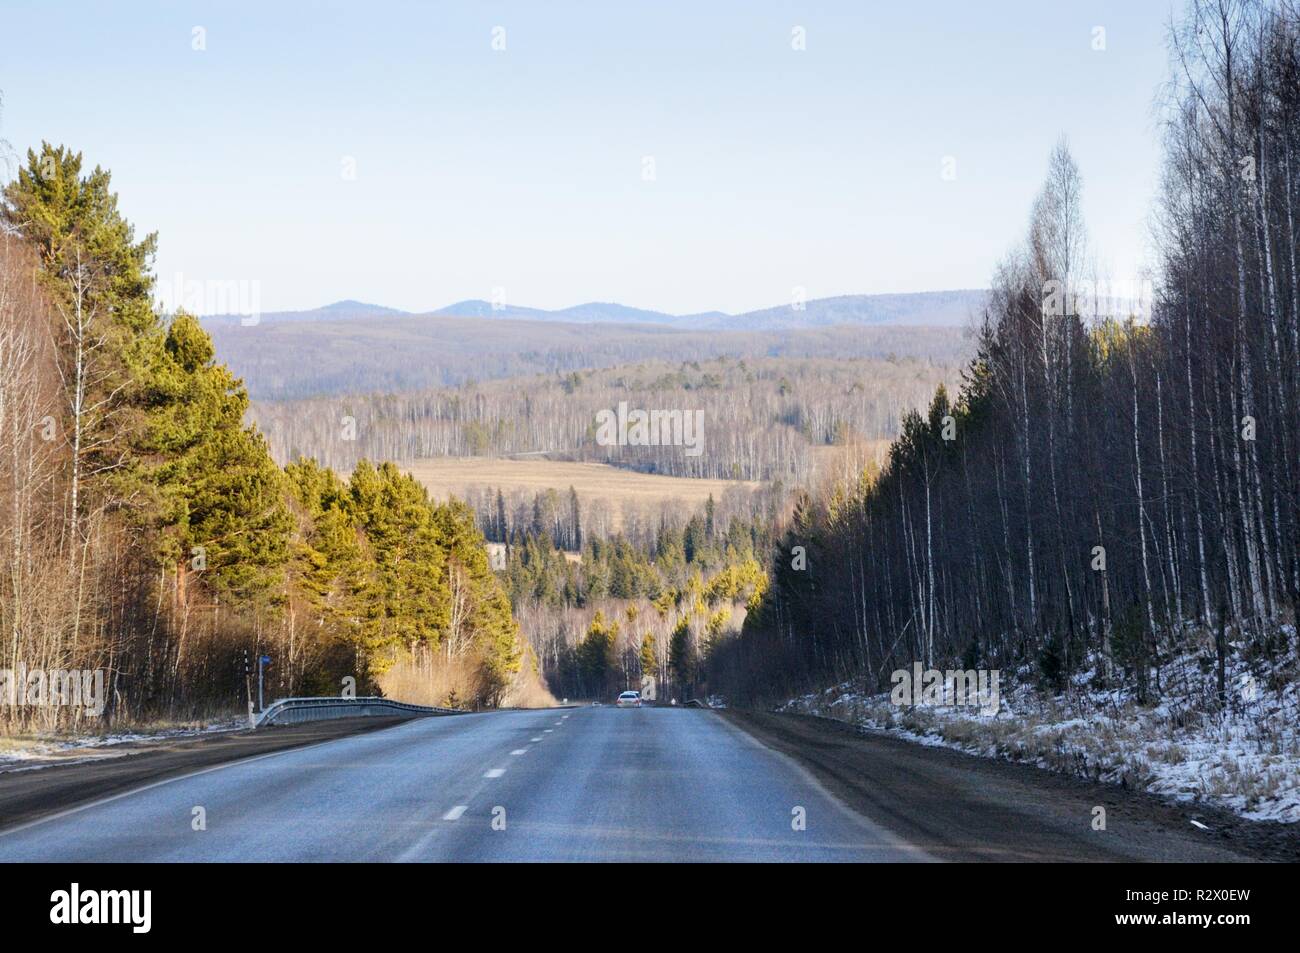 Paesaggio autunnale con strada asfaltata a morbide colline coperte con la taiga forest sotto il cielo blu in Siberia, Russia Foto Stock